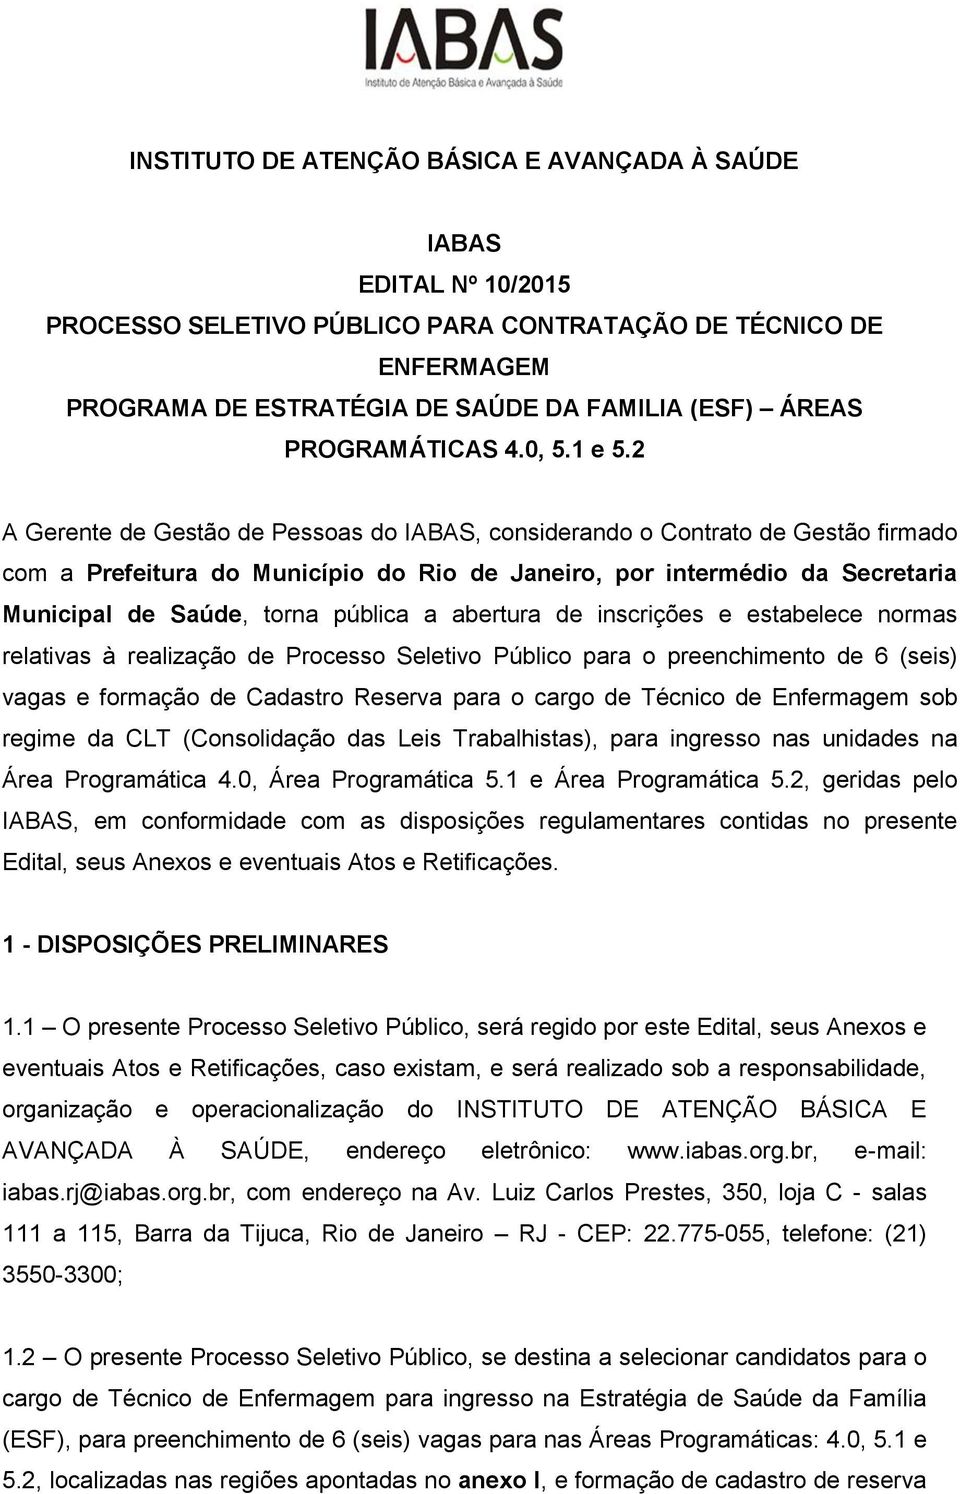 2 A Gerente de Gestão de Pessoas do IABAS, considerando o Contrato de Gestão firmado com a Prefeitura do Município do Rio de Janeiro, por intermédio da Secretaria Municipal de Saúde, torna pública a